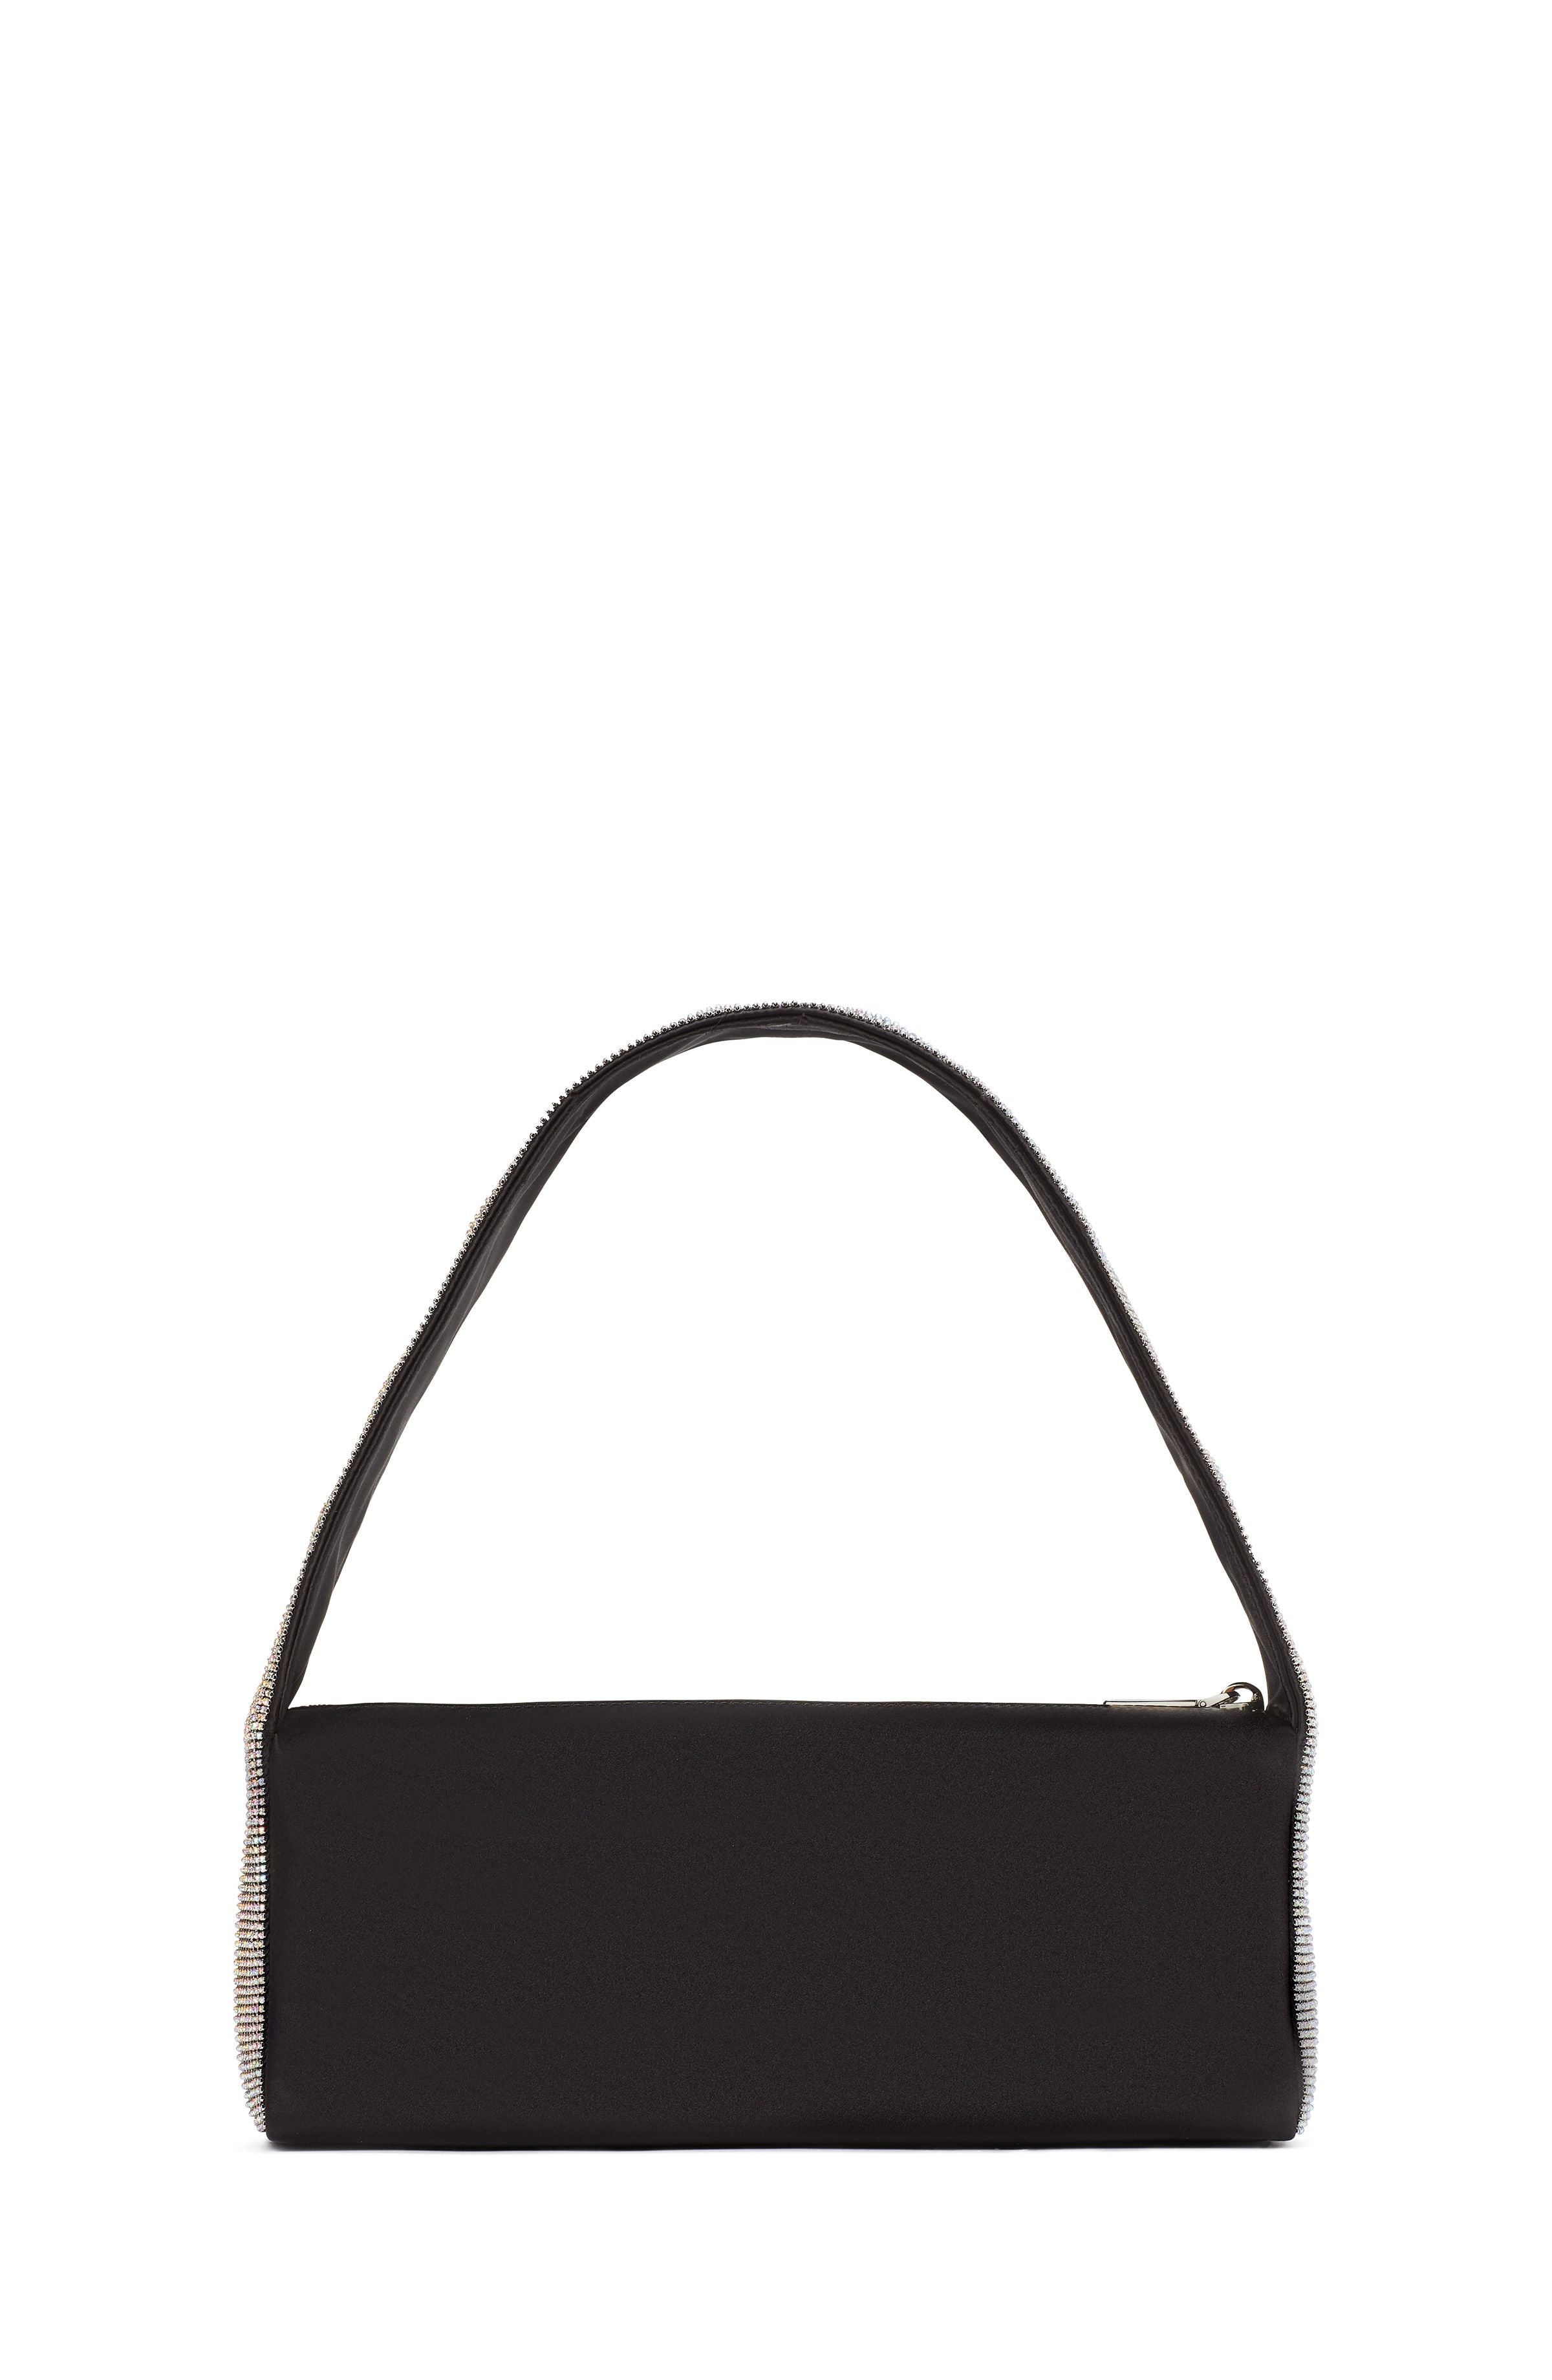 KC915-afterparty crystal embellished satin shoulder bag-Black Multi